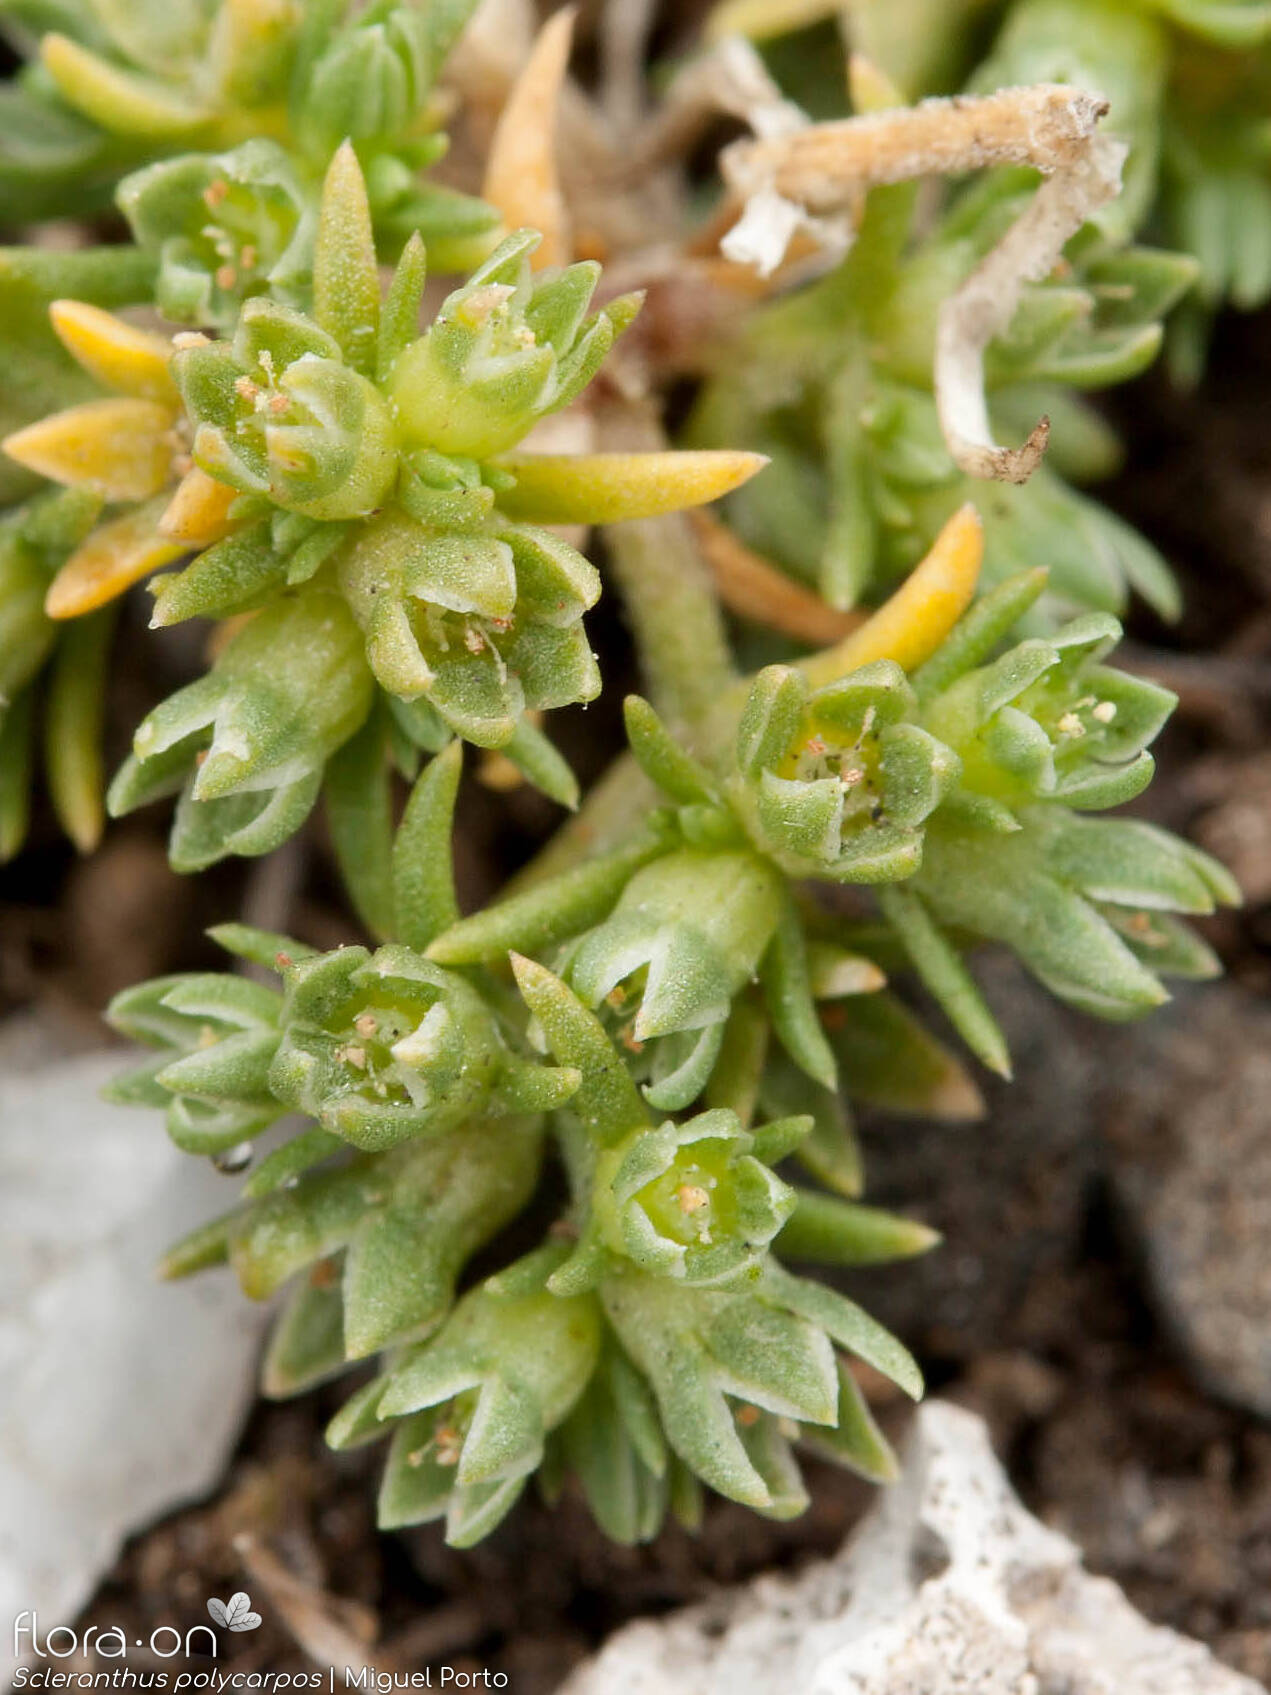 Scleranthus polycarpos - Flor (geral) | Miguel Porto; CC BY-NC 4.0